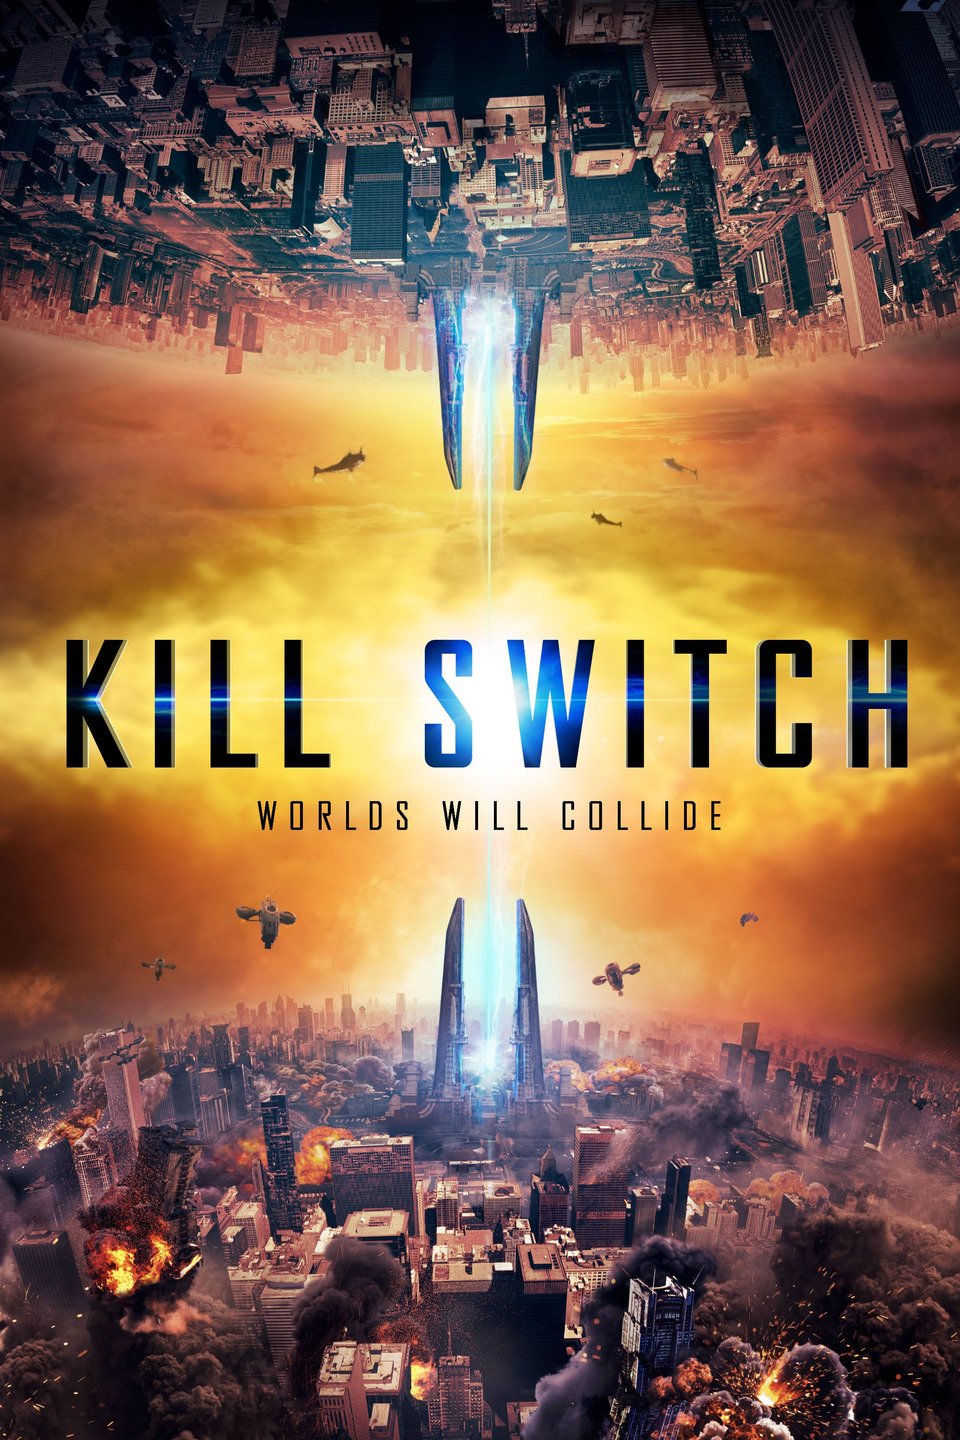 [MINI Super-HQ] Kill Switch (2017) วันหายนะพลิกโลก [1080p] [พากย์ไทย 5.1 + เสียงอังกฤษ DTS] [BrRip.DTS.x264] [บรรยายไทย + อังกฤษ] [เสียงไทย + ซับไทย] [ONE2UP]